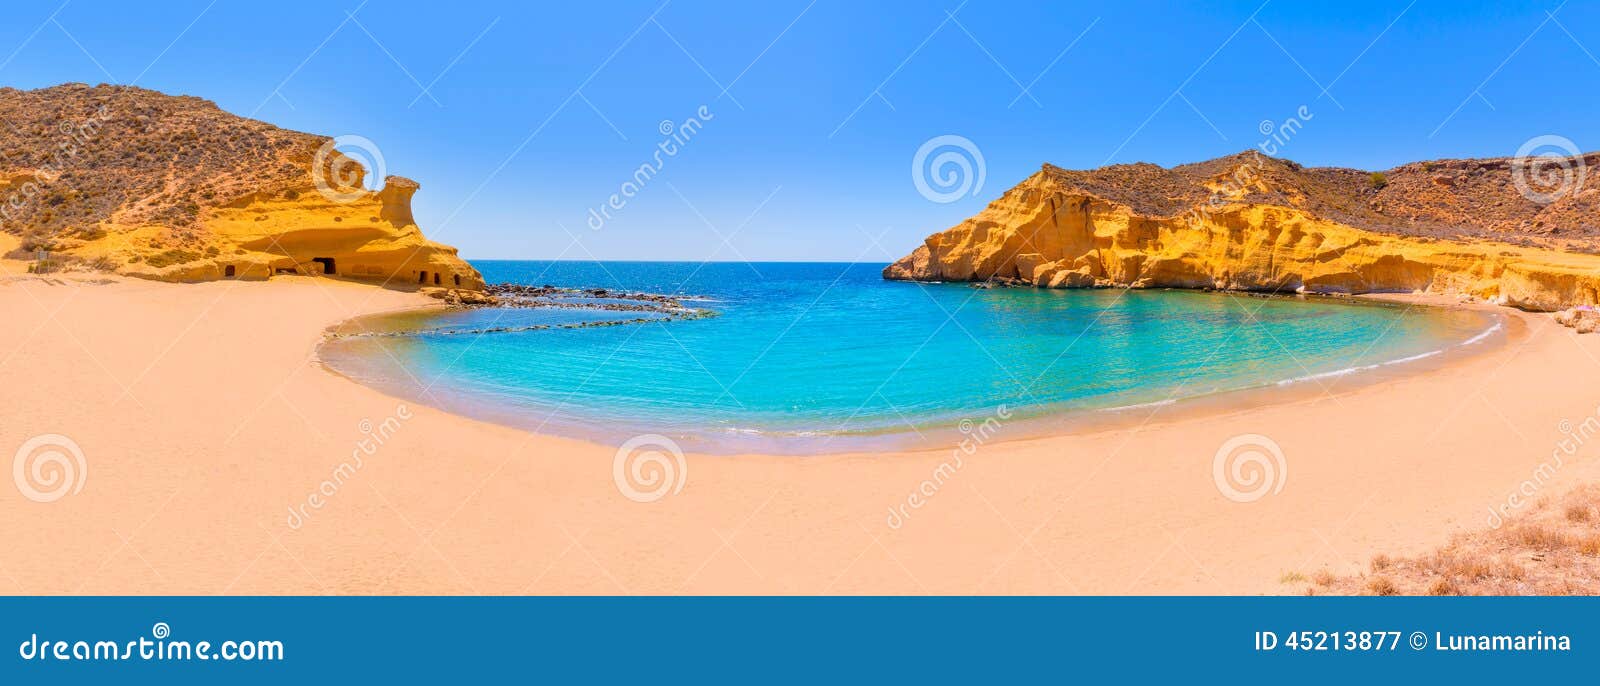 Praias E Mulheres De Murcia-44873